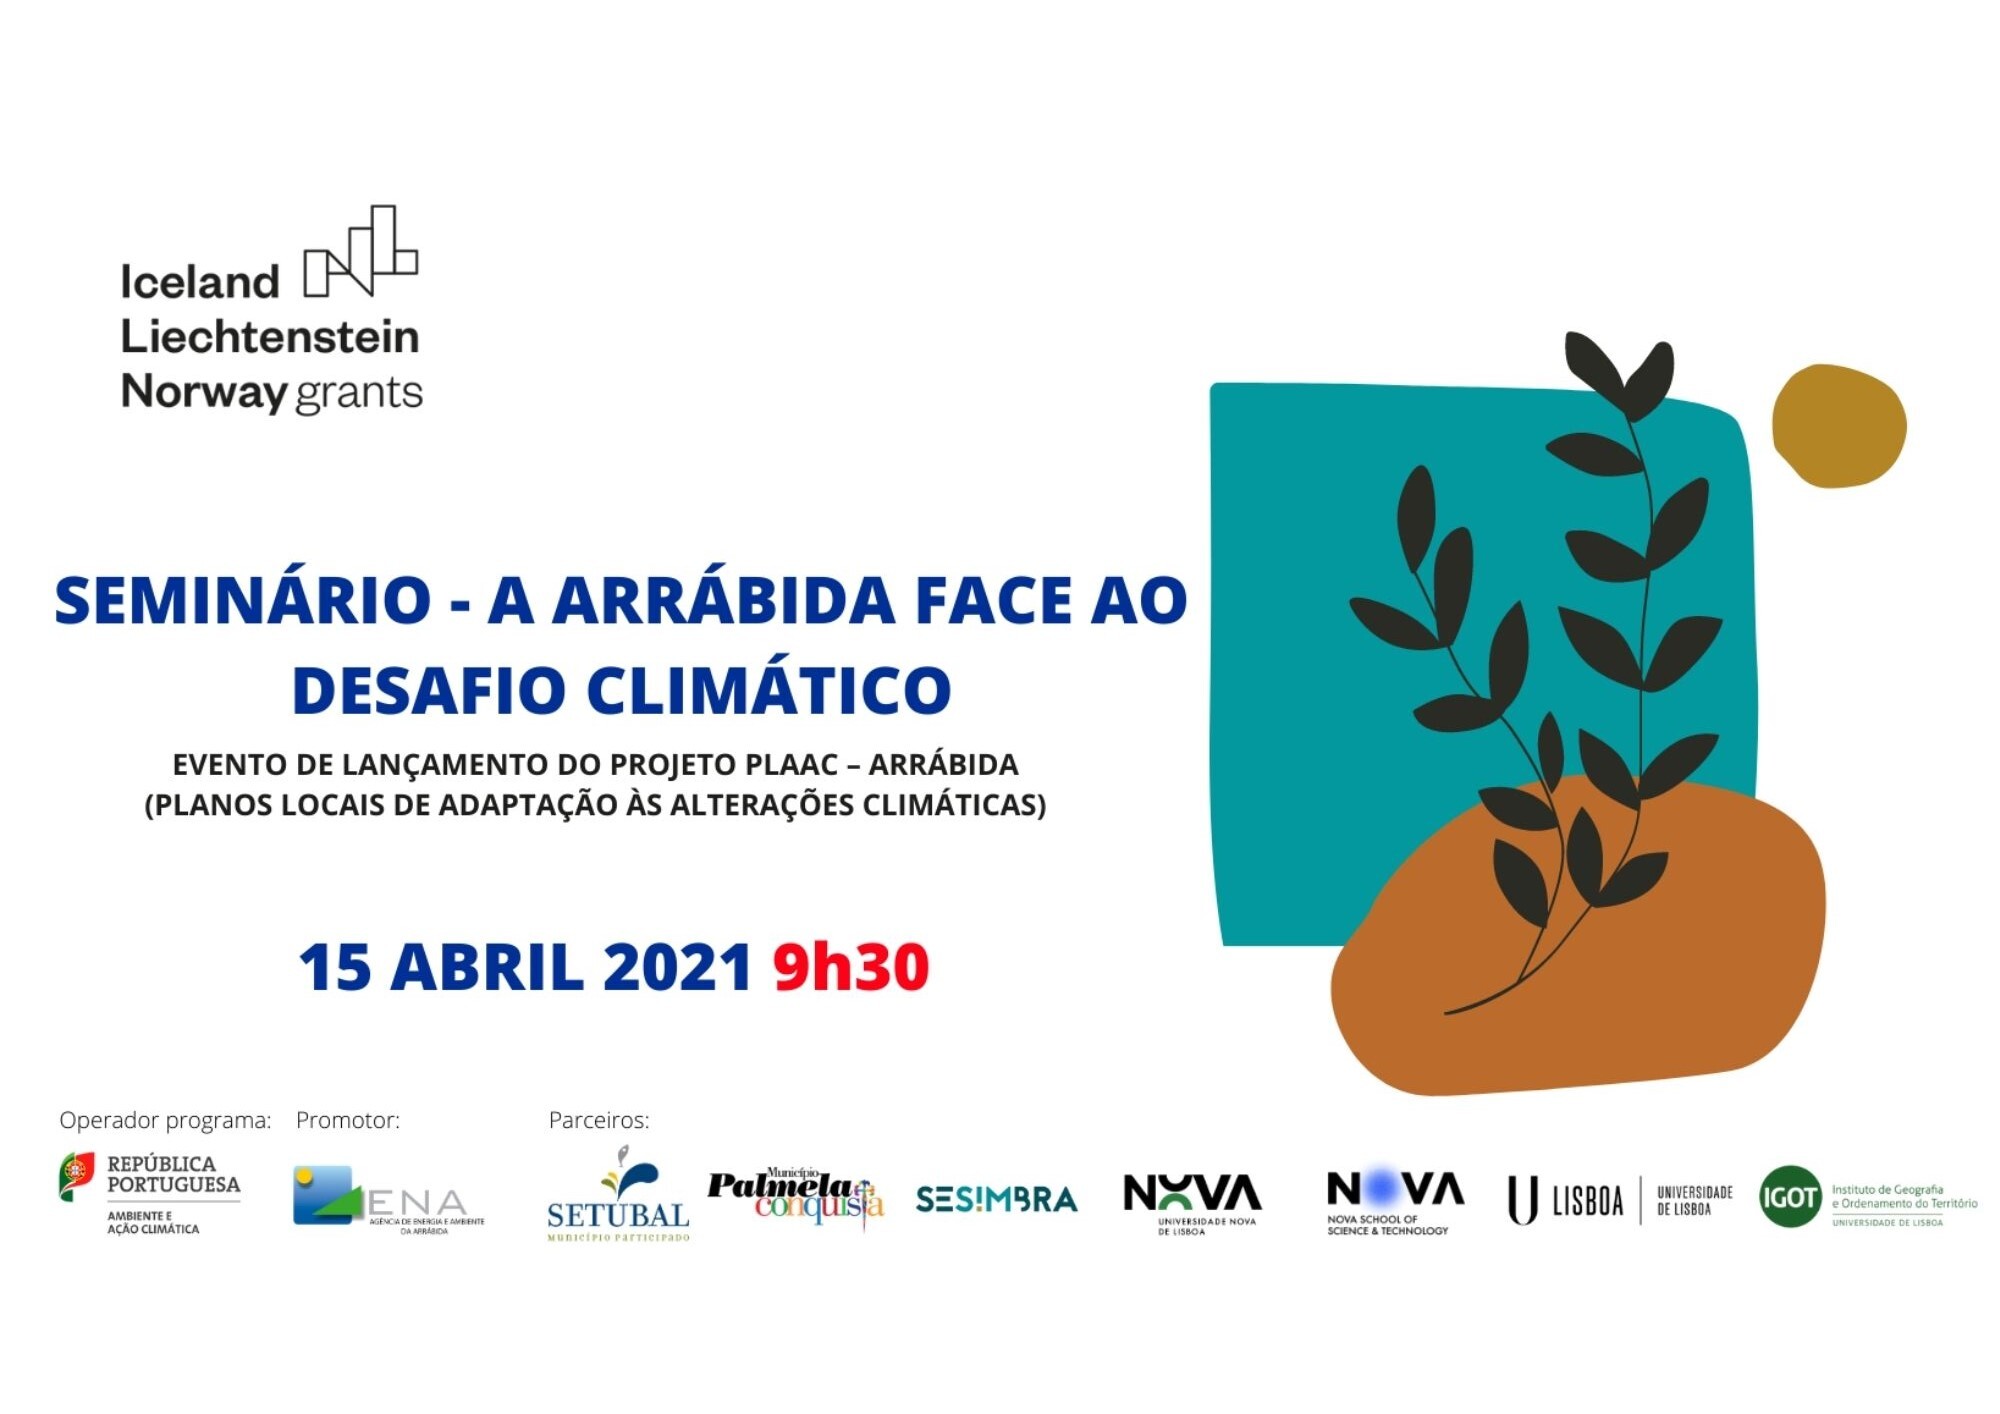 Alterações climáticas: projeto PLAAC - Arrábida com lançamento a 15 de abril